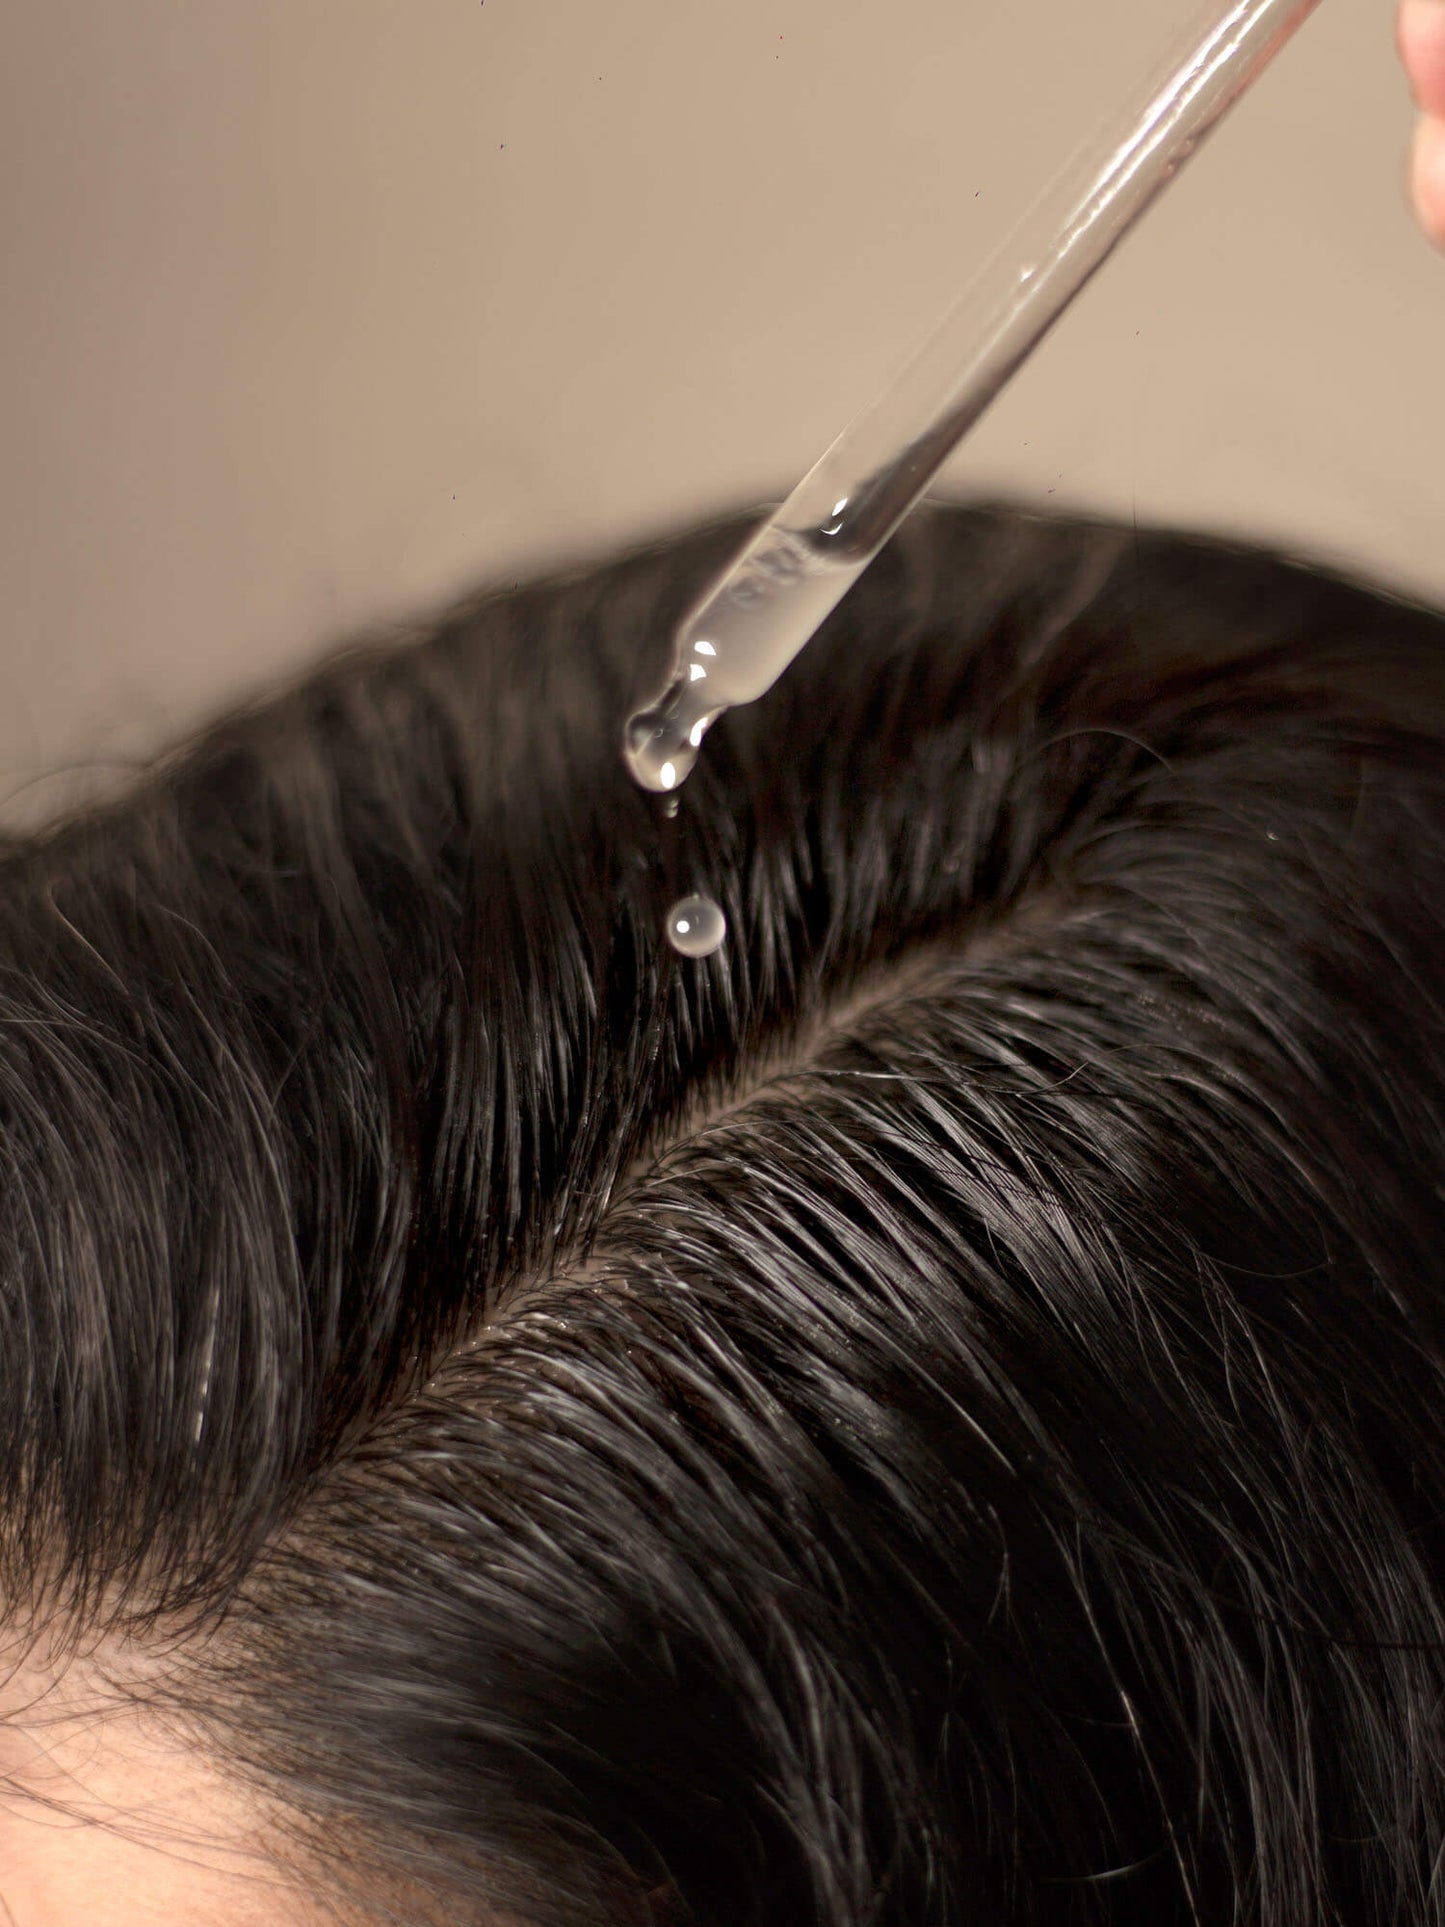 SHIKAKAI + BHRINGRAJ Stimulating Scalp Serum for Hair Growth